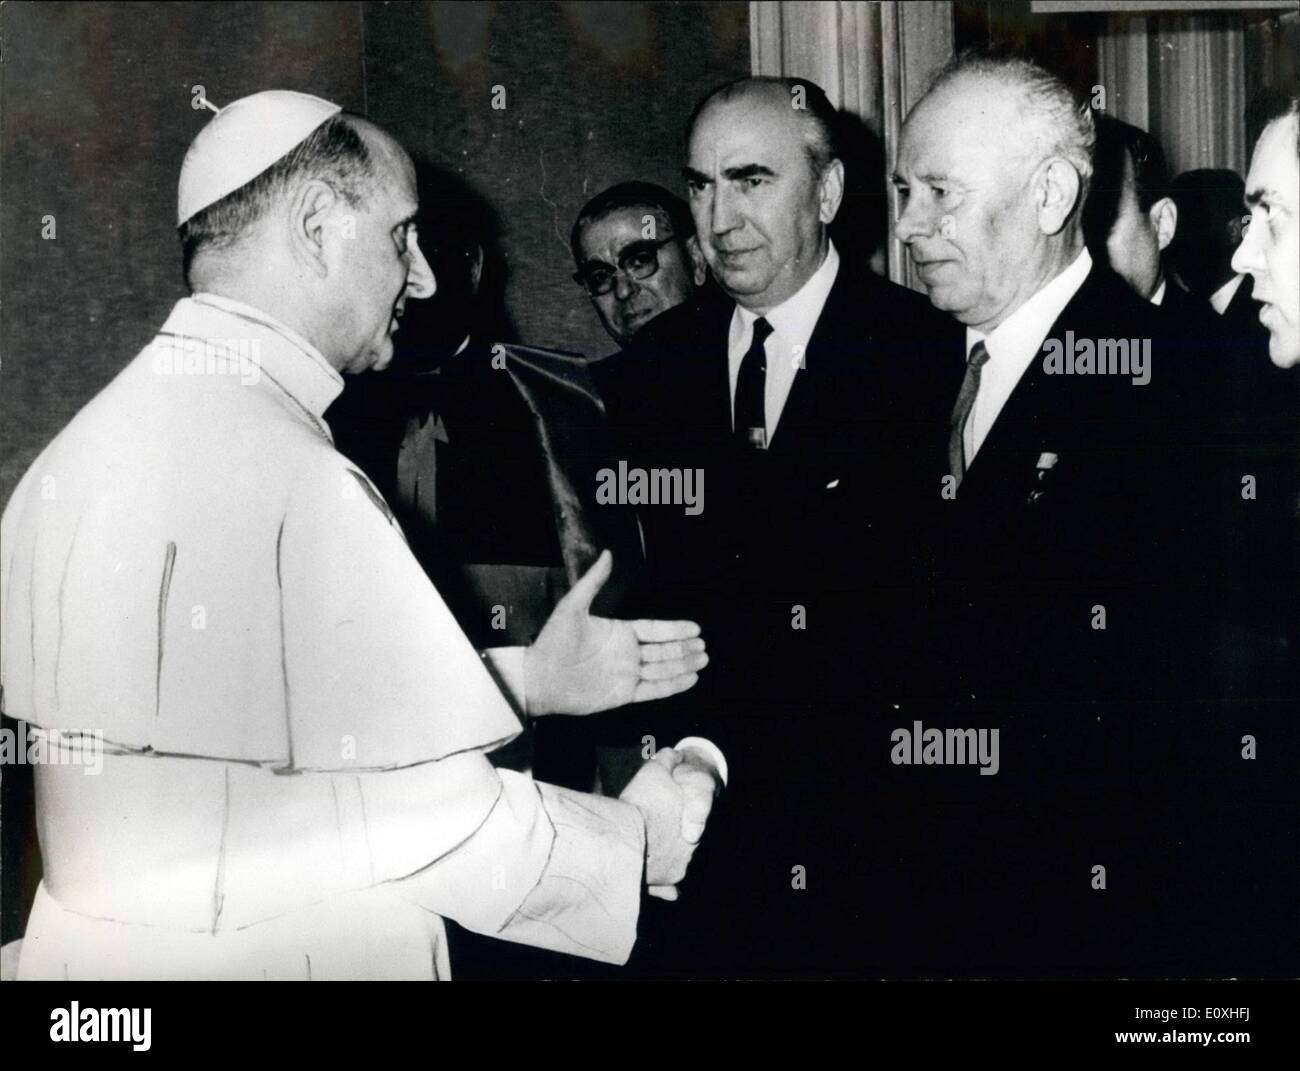 01 janvier 1967 - Visite historique du Pape Paul VI a rencontré le Président du Présidium de l'utilisateur Nicolai Podgorni. La photo montre le Pape Banque D'Images